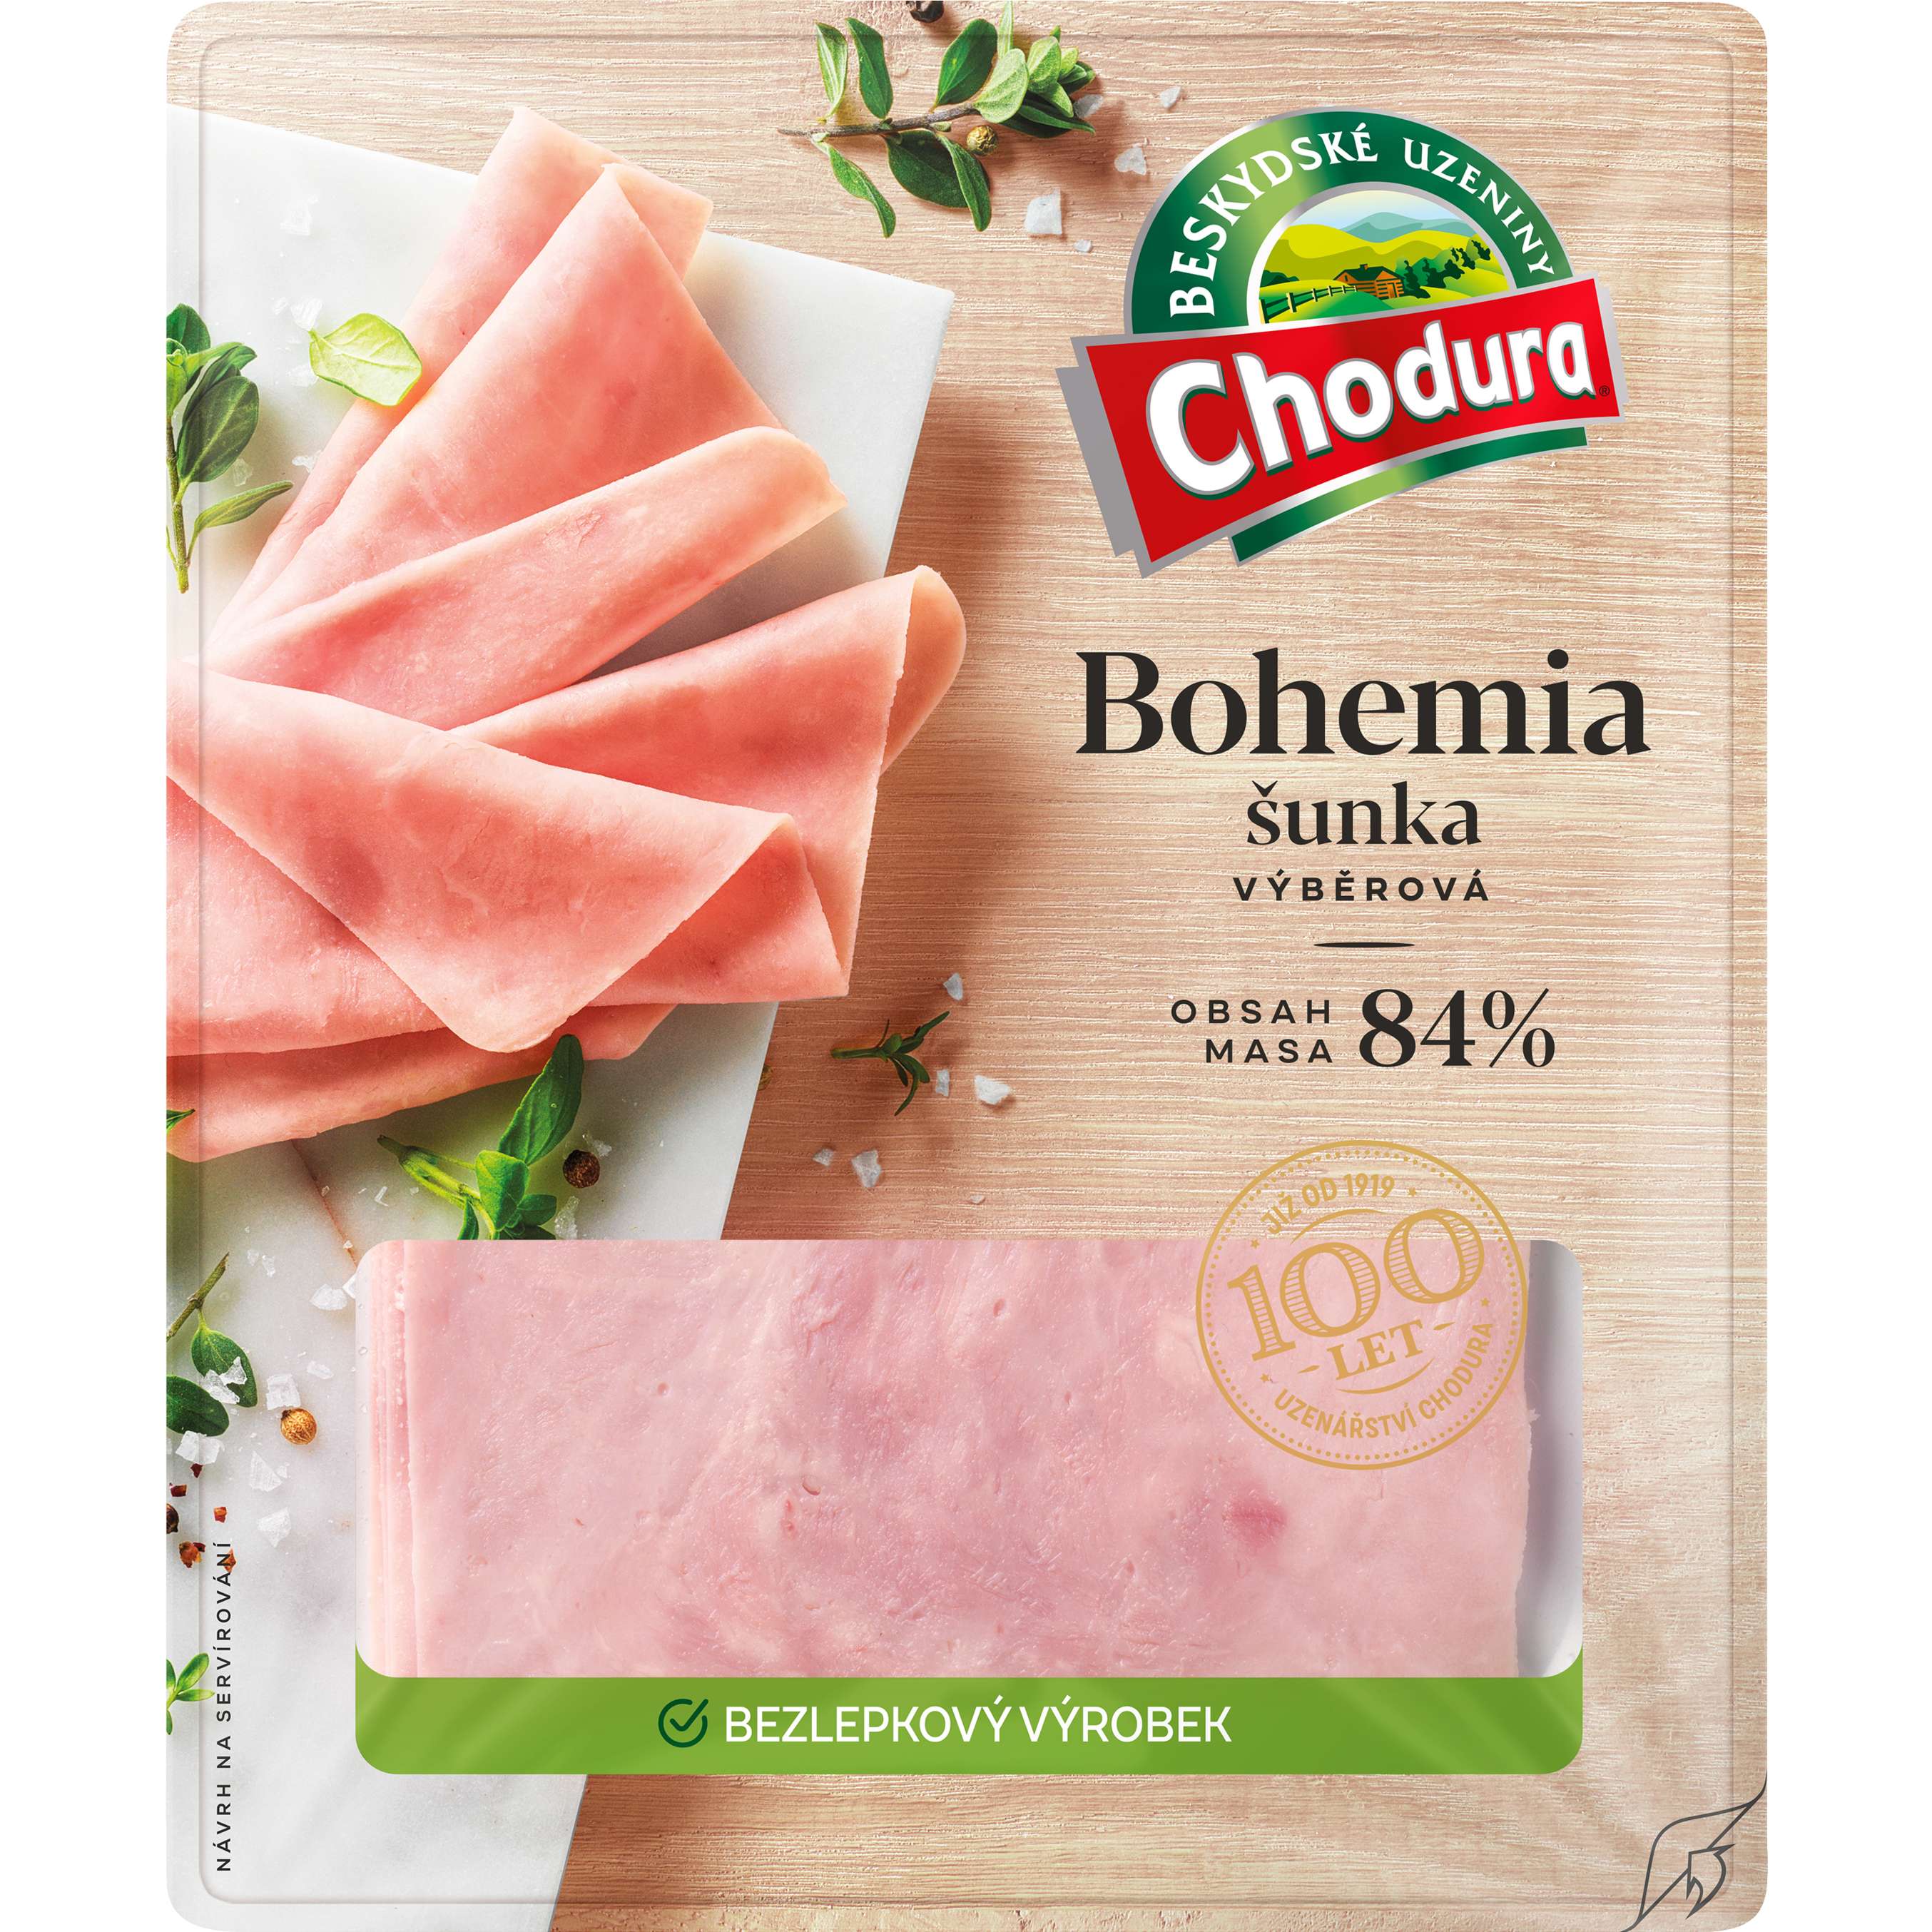 Zobrazit nabídku Chodura Bohemia šunka výběrová